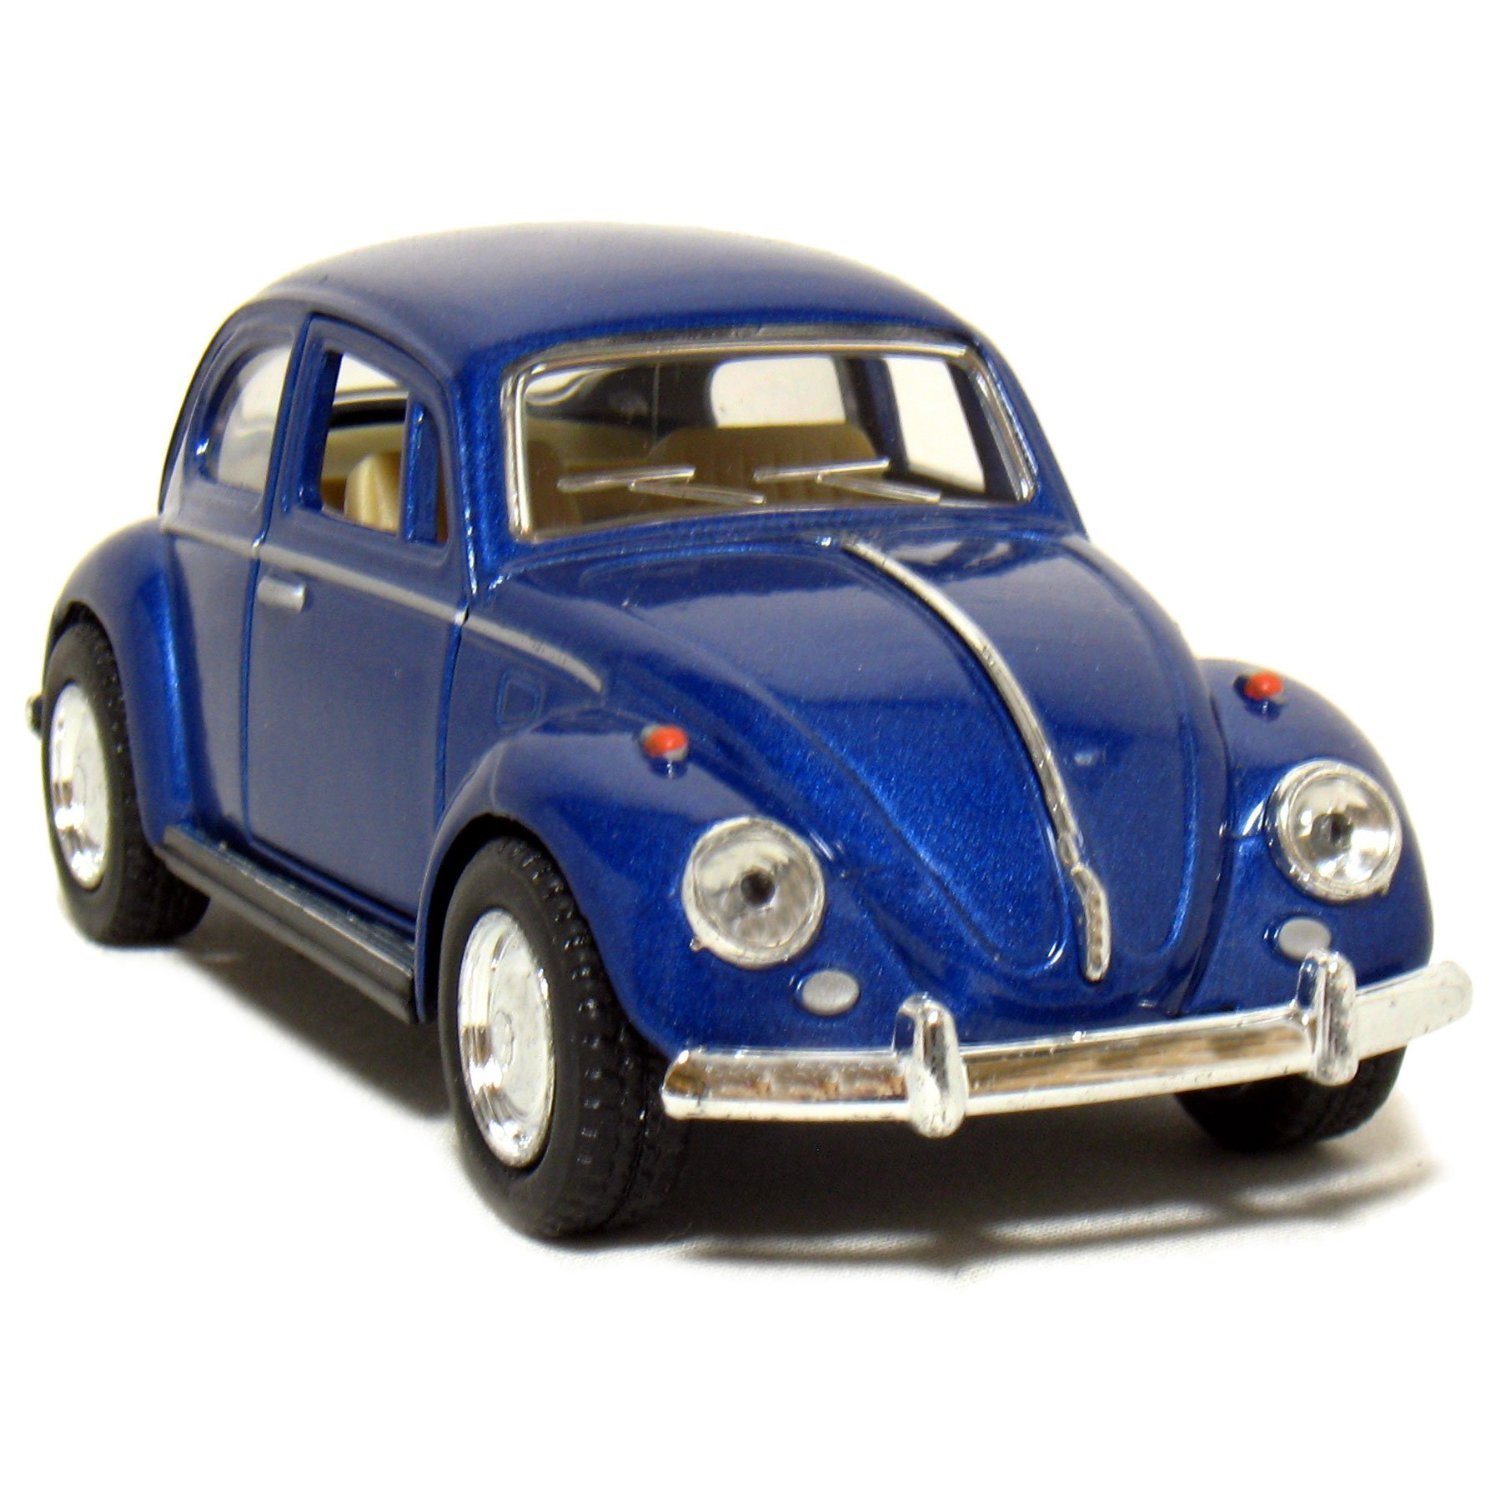 Blue volkswagen beetle photo